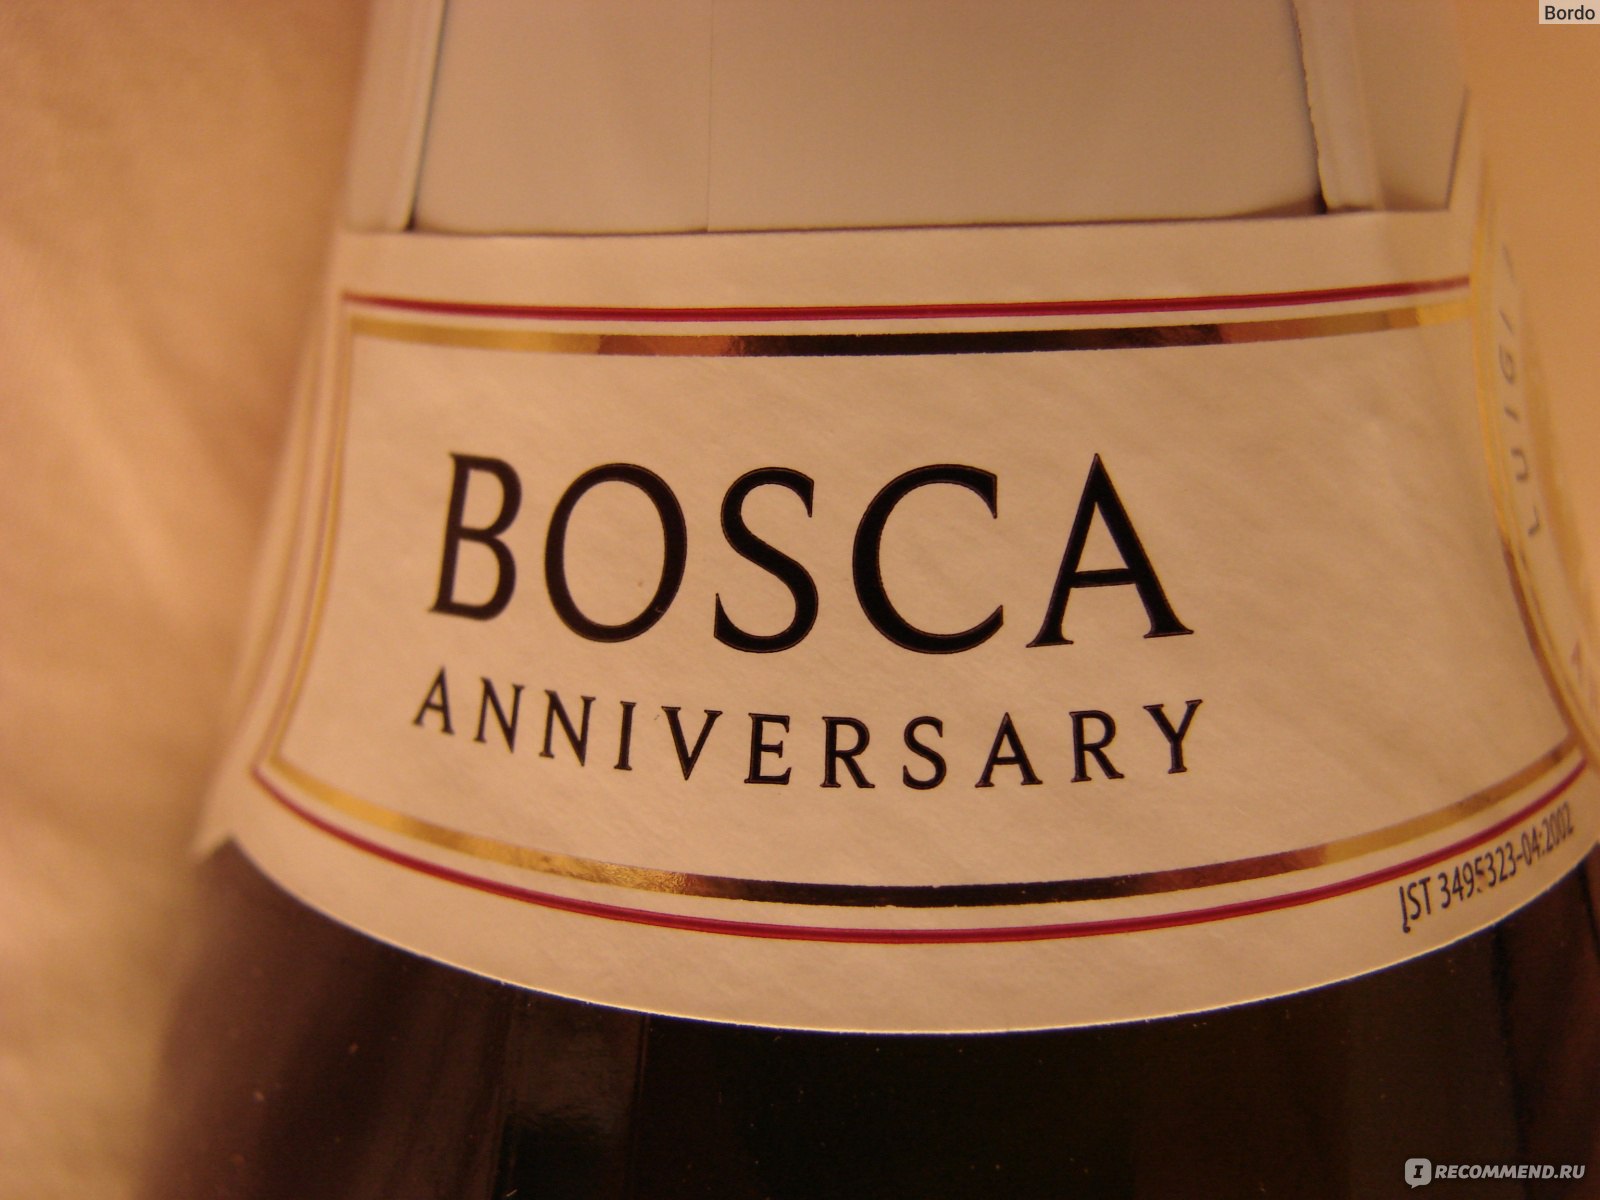 Боско красное шампанское. Винный напиток "Bosca" Rose. Боско белое полусладкое. Боска Анниверсари. Боска шампанское розовое.